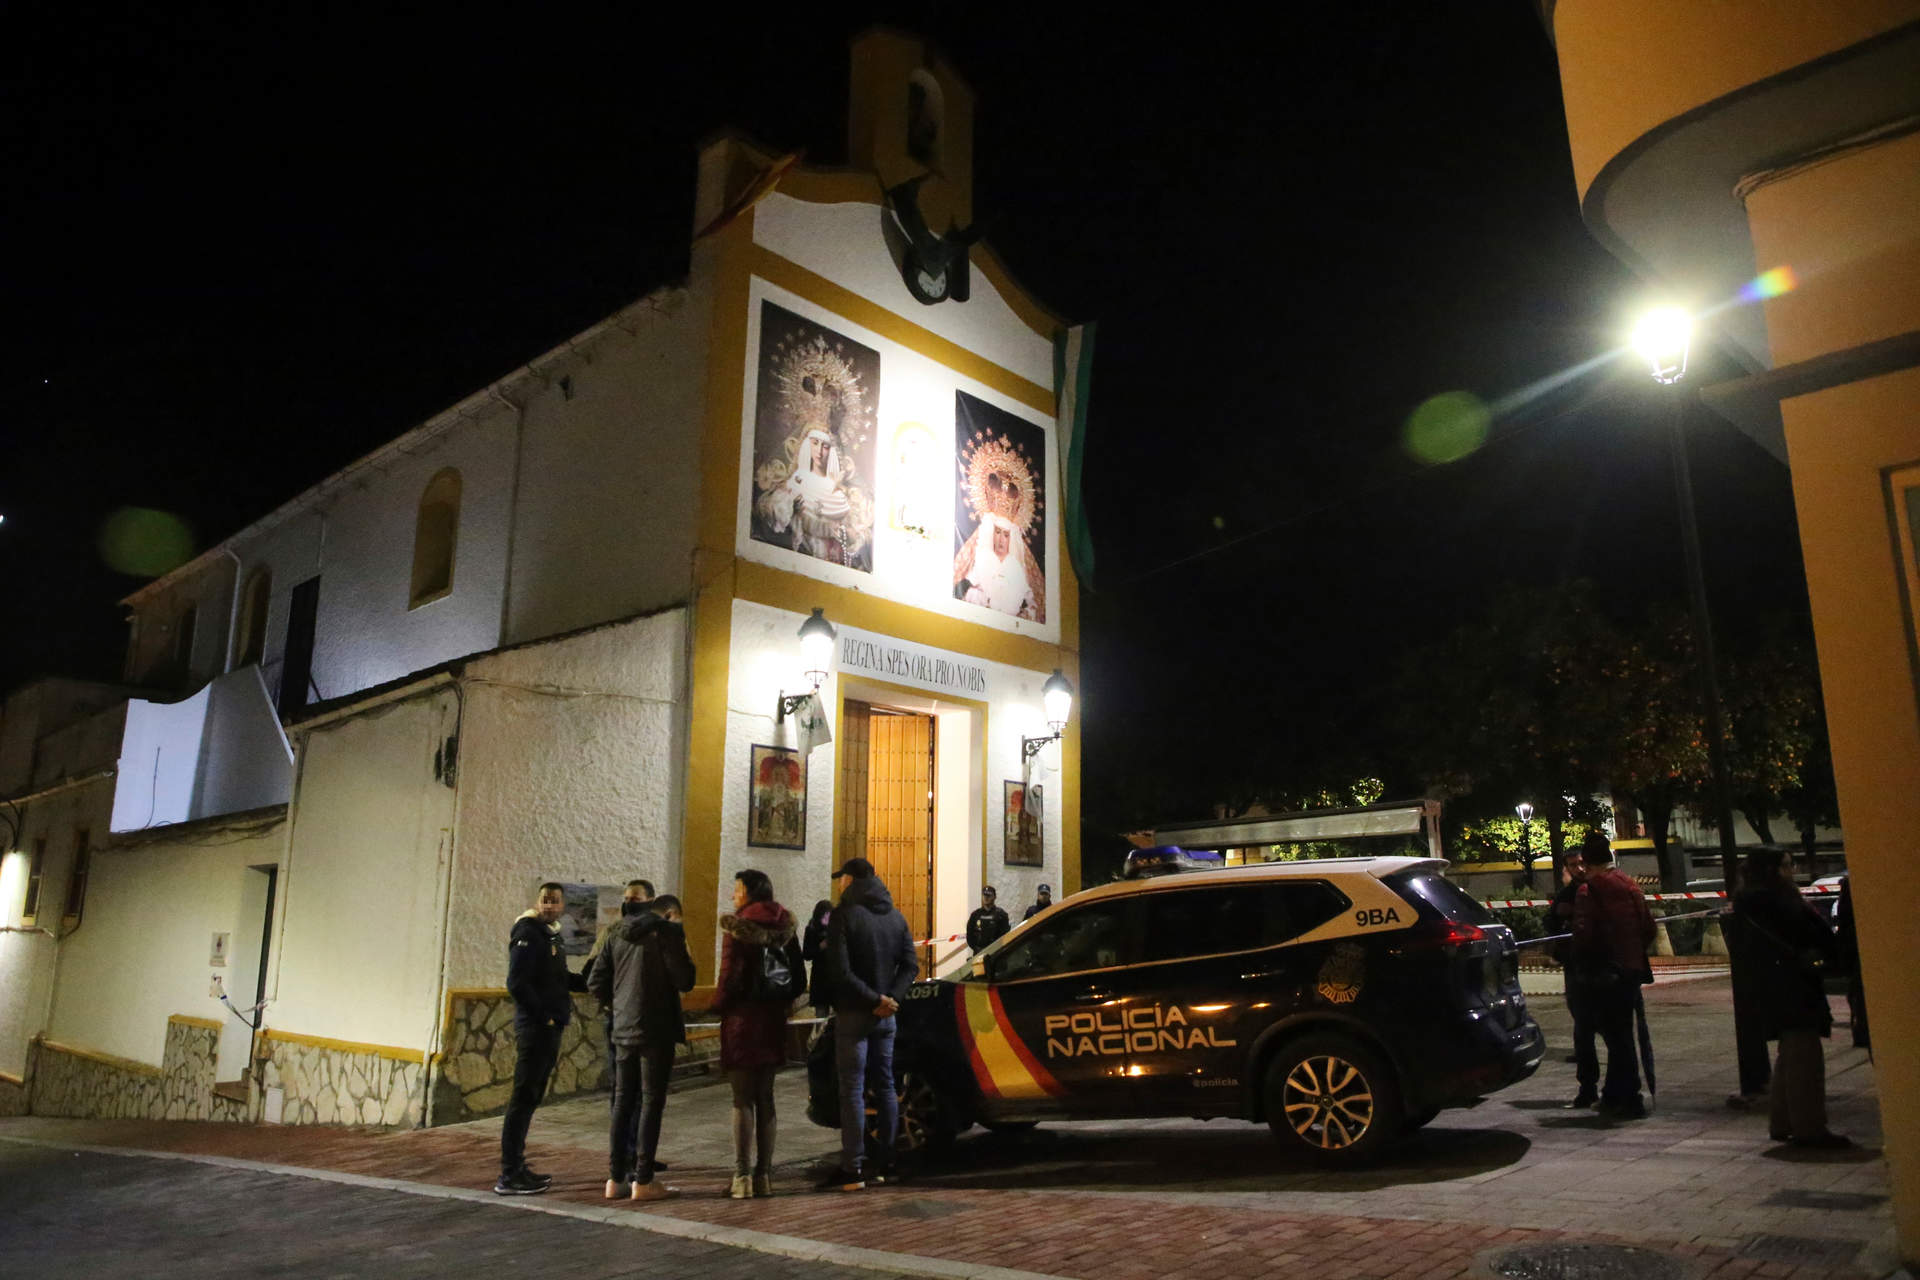 Las iglesias de Algeciras, Ceuta y Melilla no han establecido por ahora protocolos tras el ataque yihadista